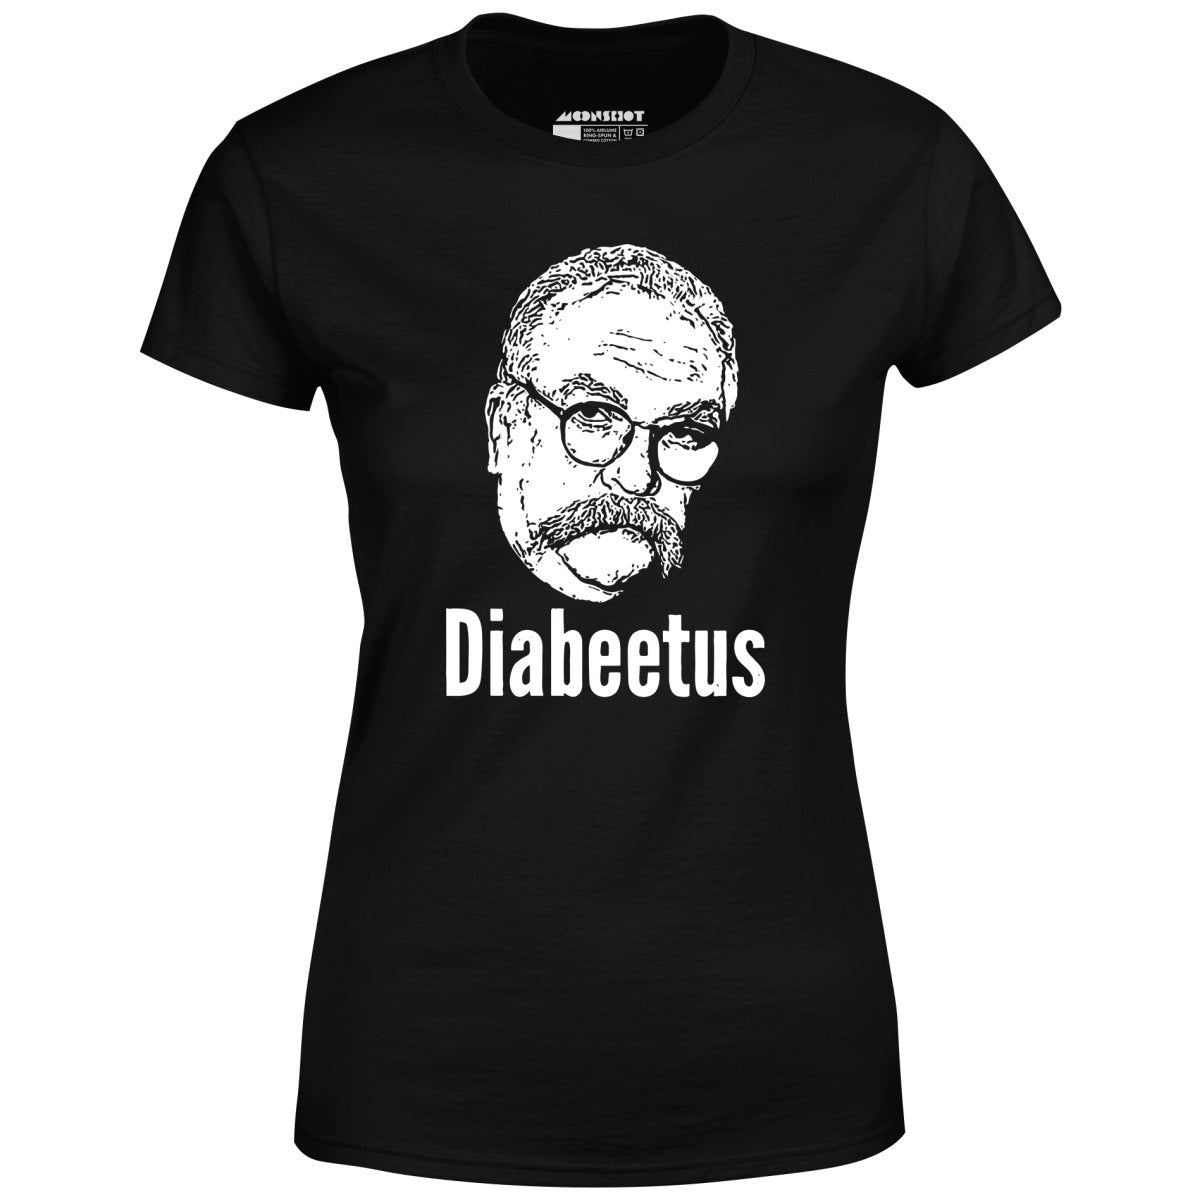 Diabeetus - Women's T-Shirt